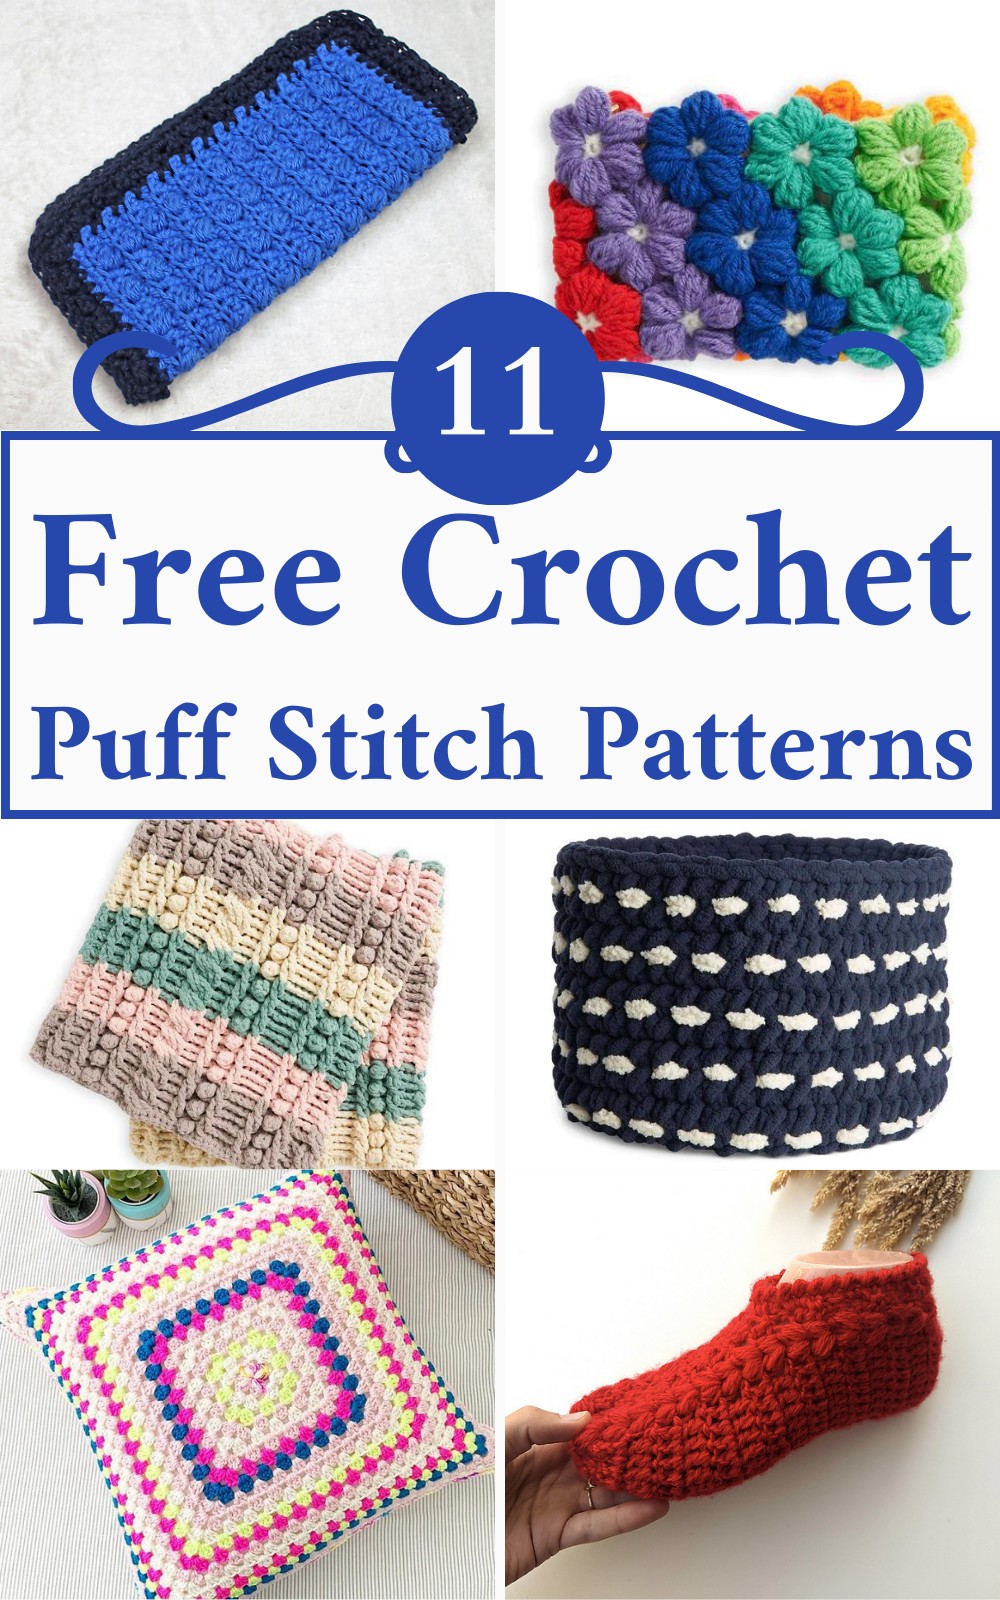 5 Free Crochet Puff Stitch Patterns